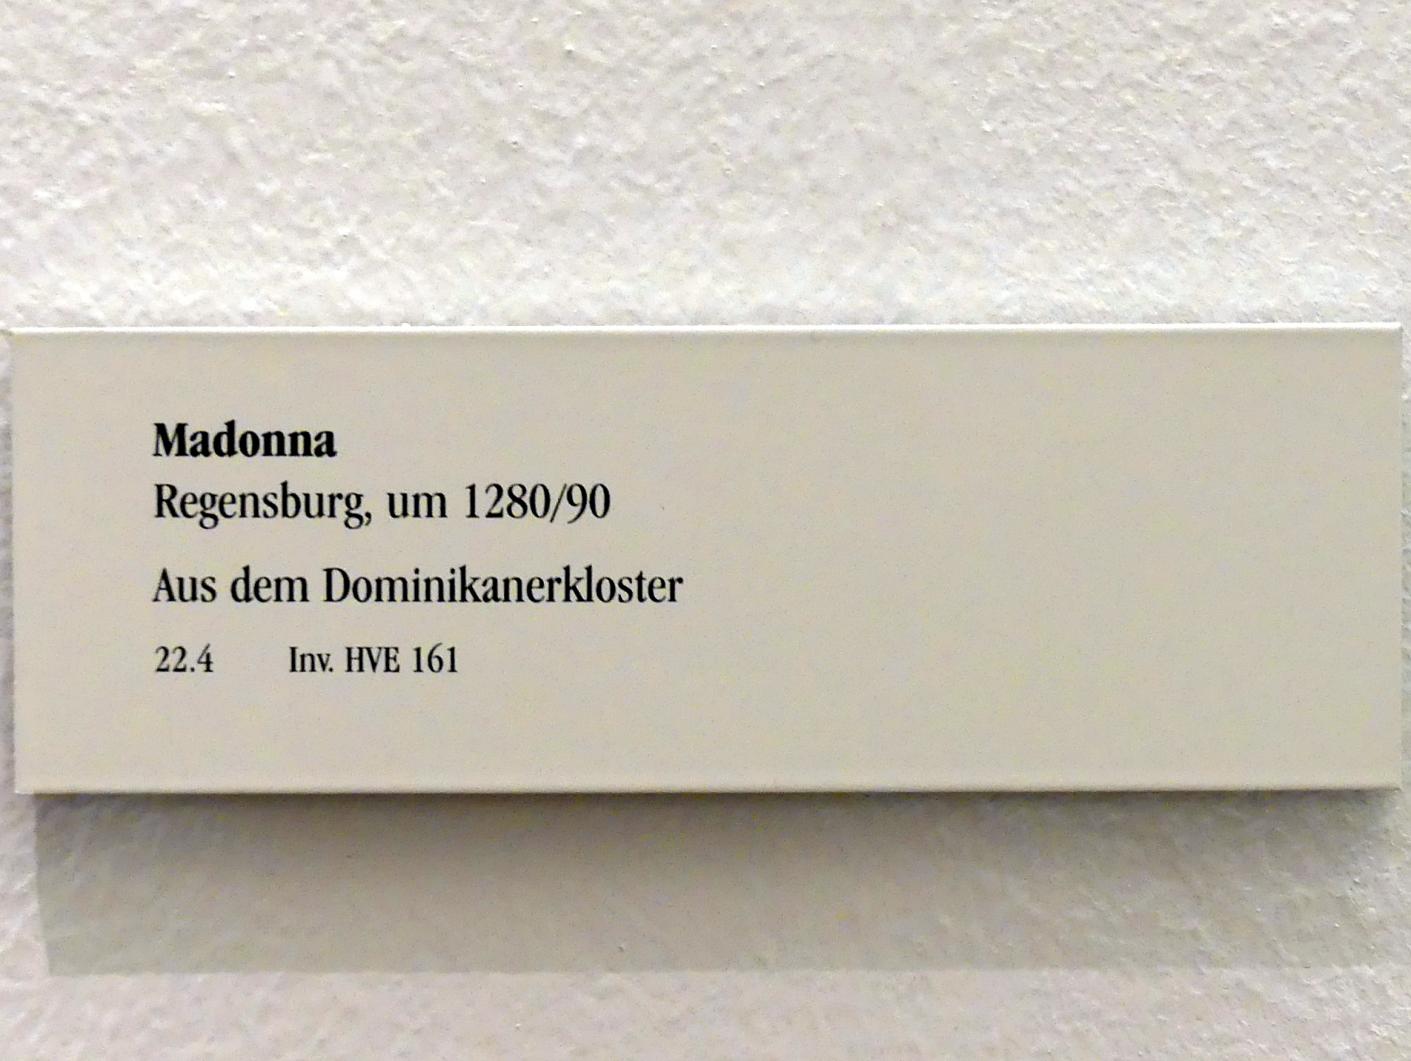 Madonna, Regensburg, ehem. Dominikanerkloster, ehem. Klosterkirche St. Blasius, jetzt Regensburg, Historisches Museum, um 1280–1290, Bild 2/2